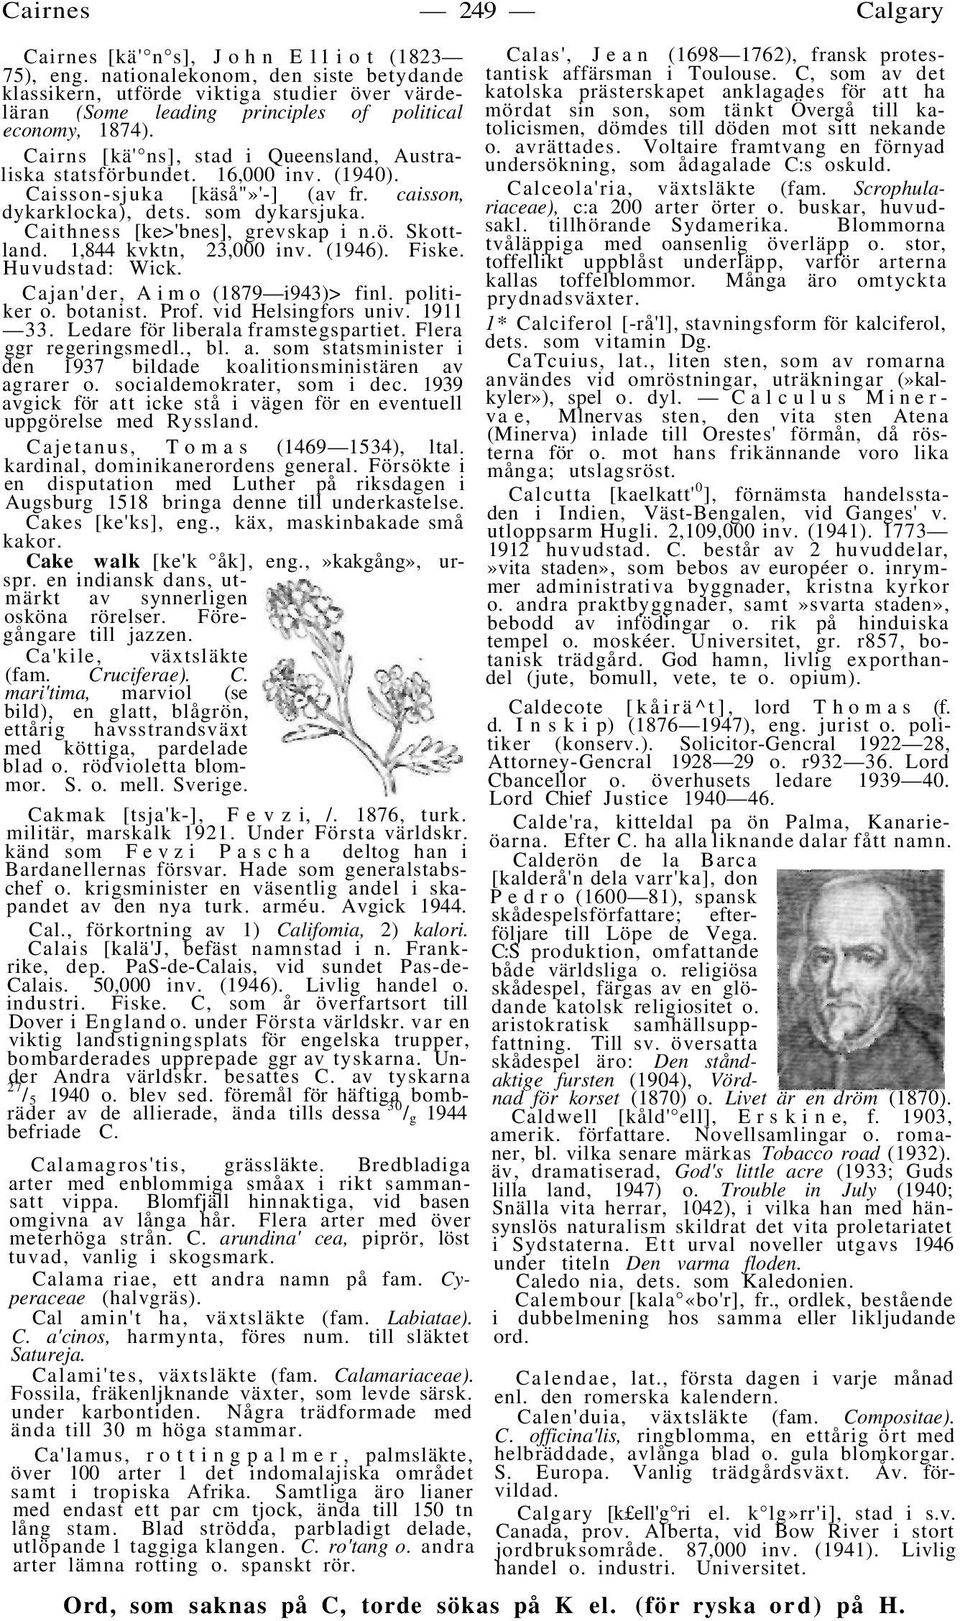 Cairns [kä' ns], stad i Queensland, Australiska statsförbundet. 16,000 inv. (1940). Caisson-sjuka [käså"»'-] (av fr. caisson, dykarklocka), dets. som dykarsjuka. Caithness [ke>'bnes], grevskap i n.ö. Skottland.